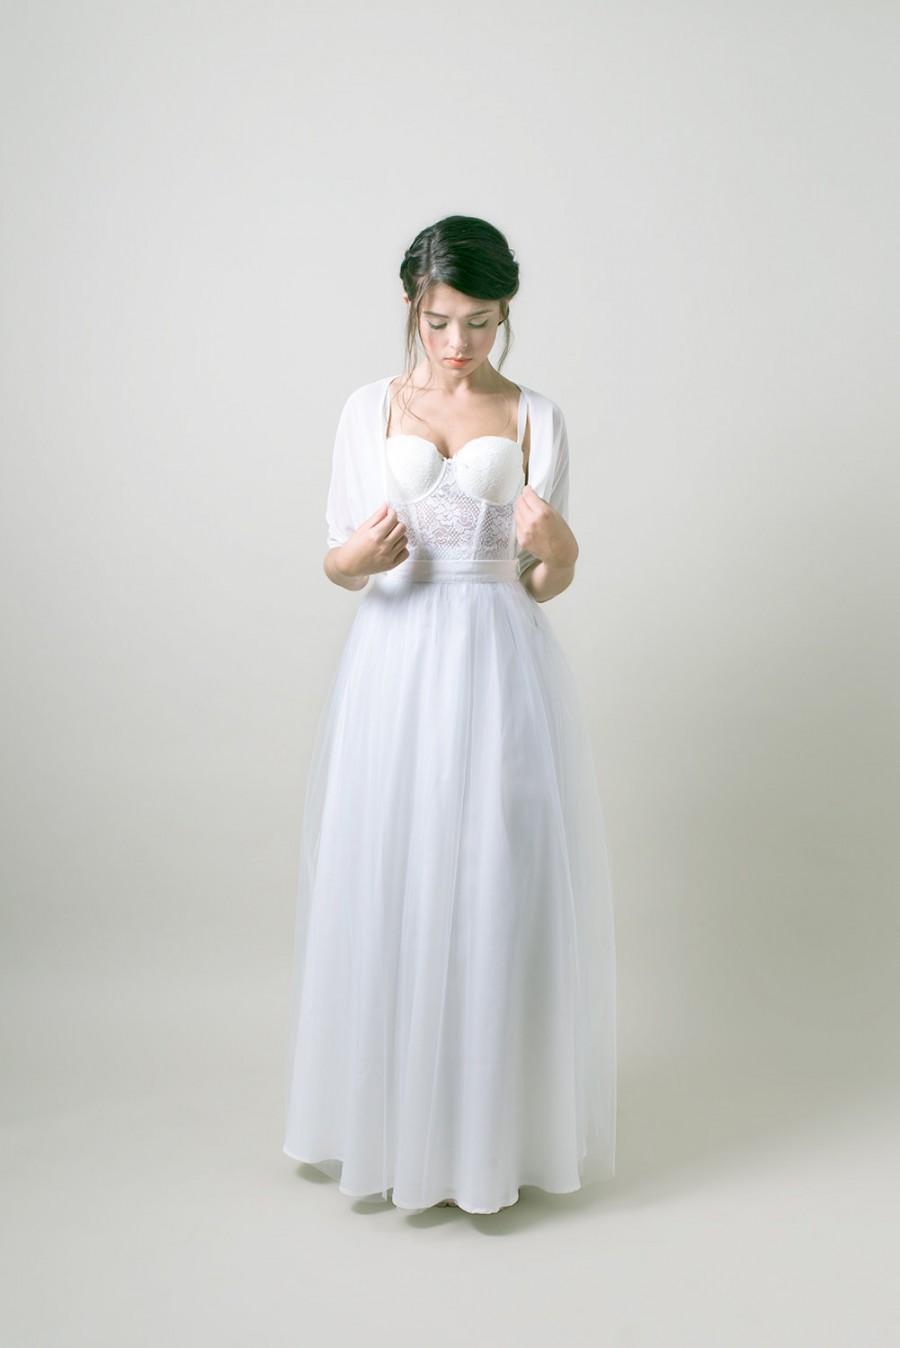 Mariage - White wedding bolero / Simple Bridal bolero / wedding jacket - Made to order